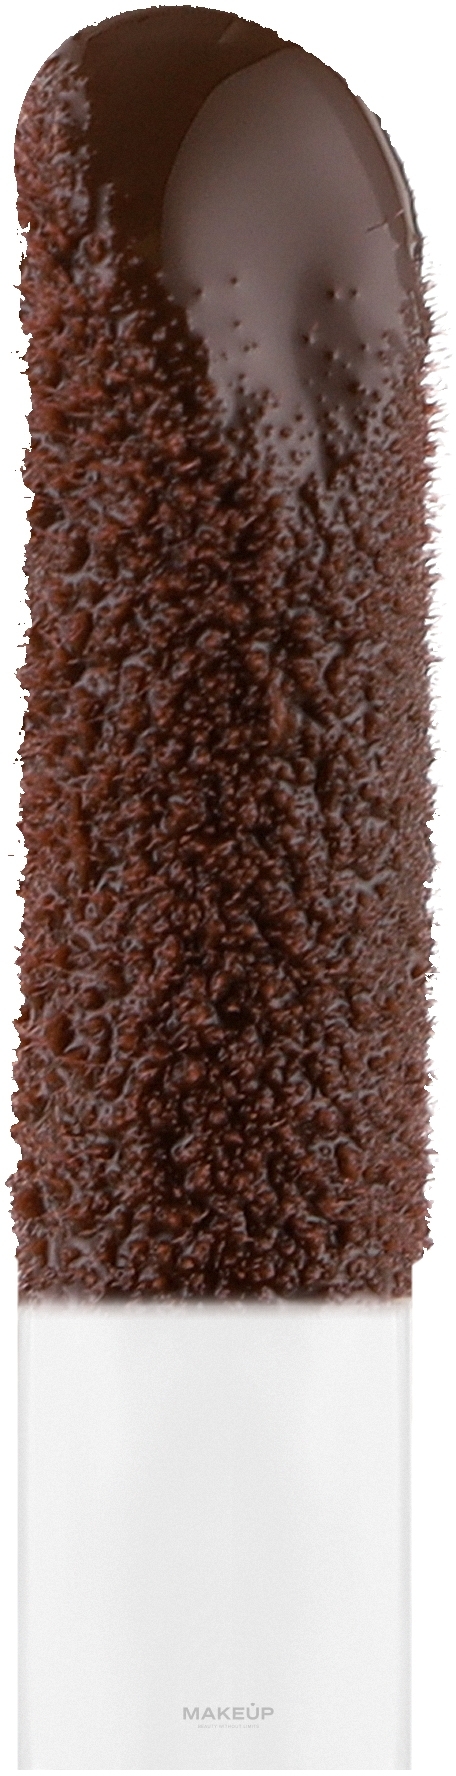 Błyszczyk zwiększający objętość ust - Farmasi Tinted Lip Plumper — Zdjęcie 04 - Hot Chocolate